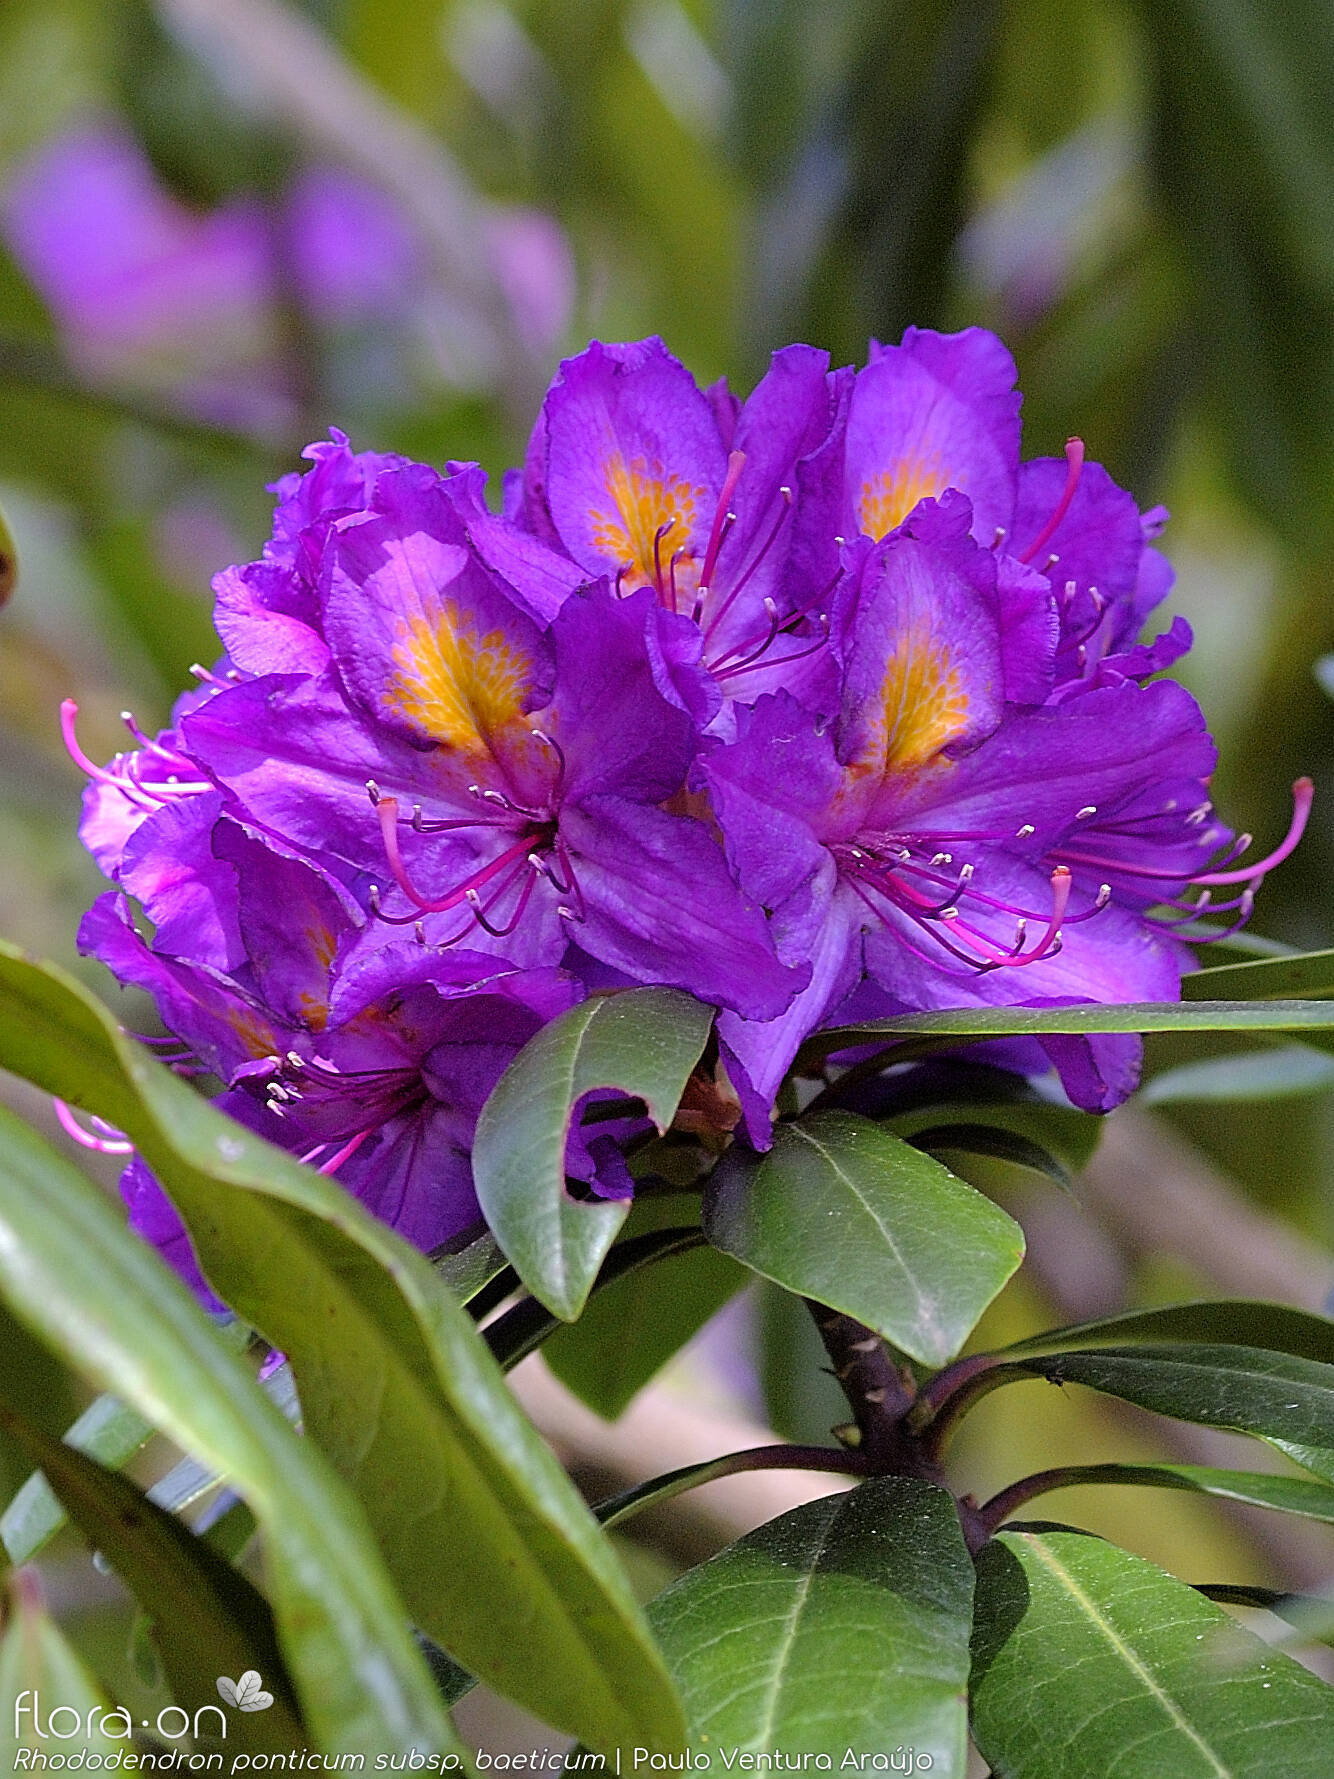 Rhododendron ponticum baeticum - Flor (geral) | Paulo Ventura Araújo; CC BY-NC 4.0